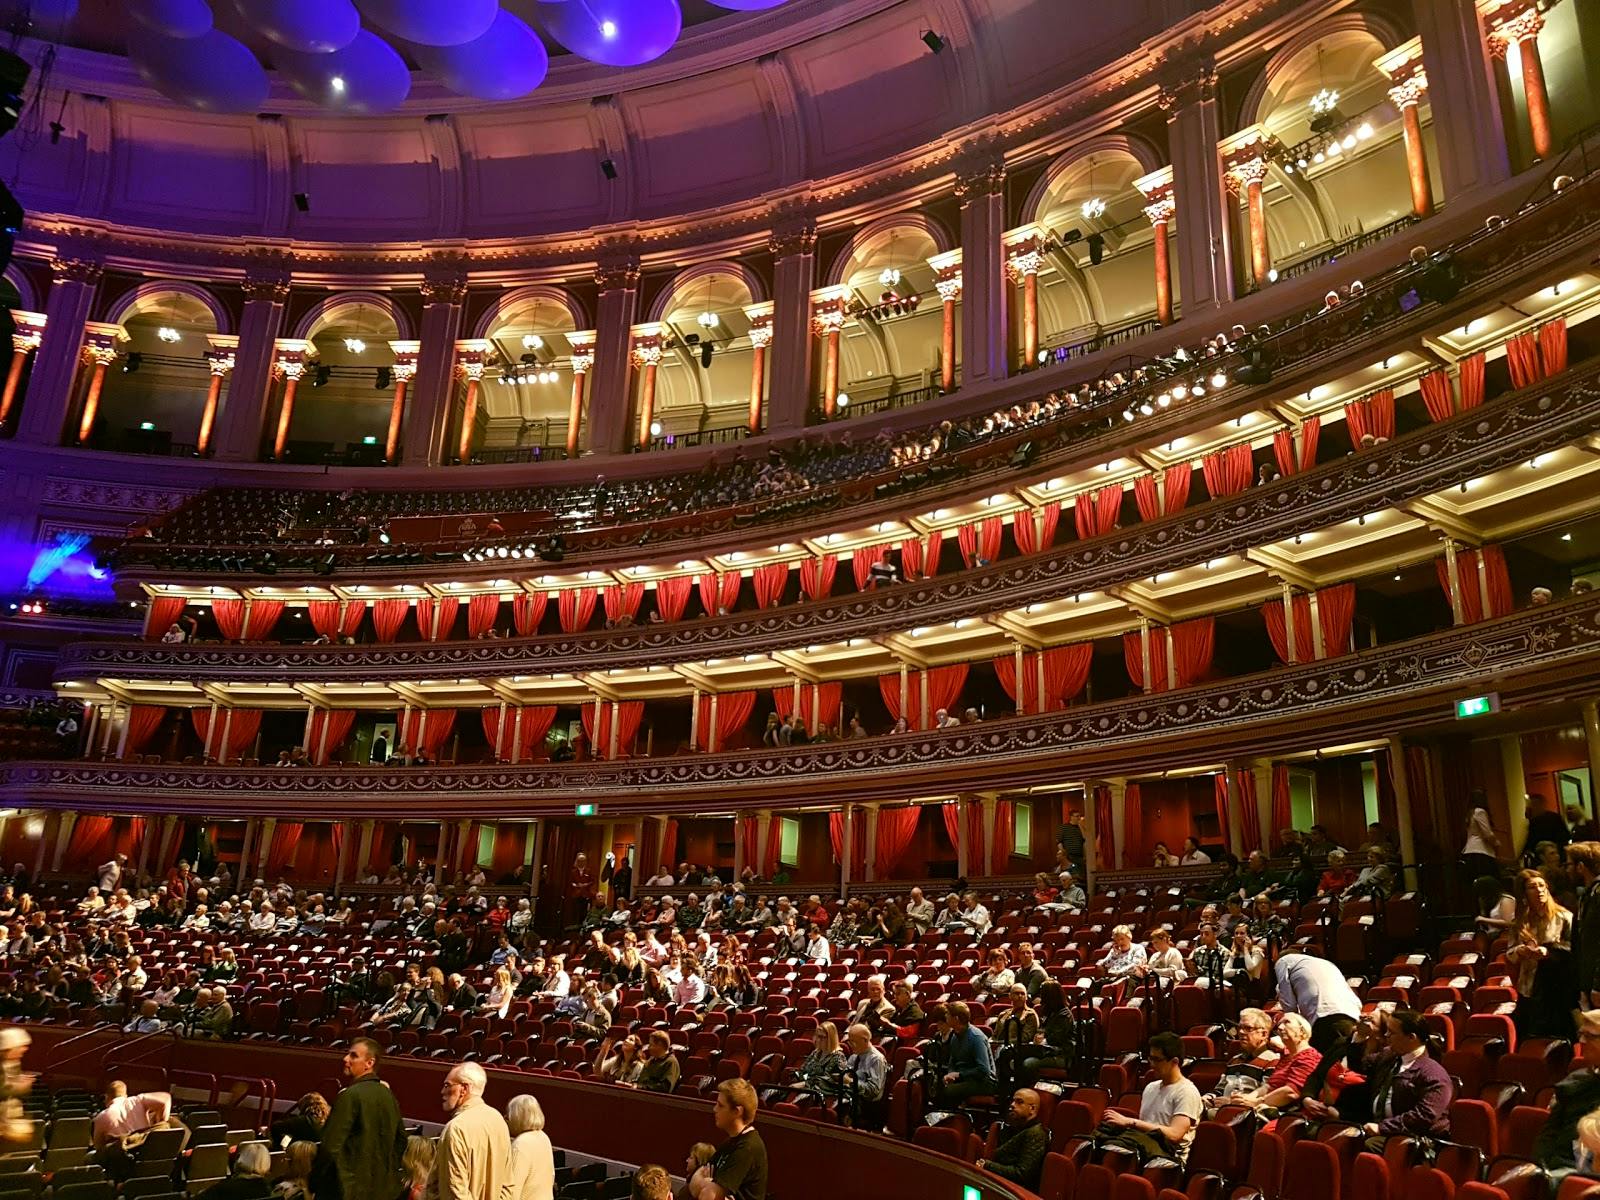 Image - Royal Albert Hall